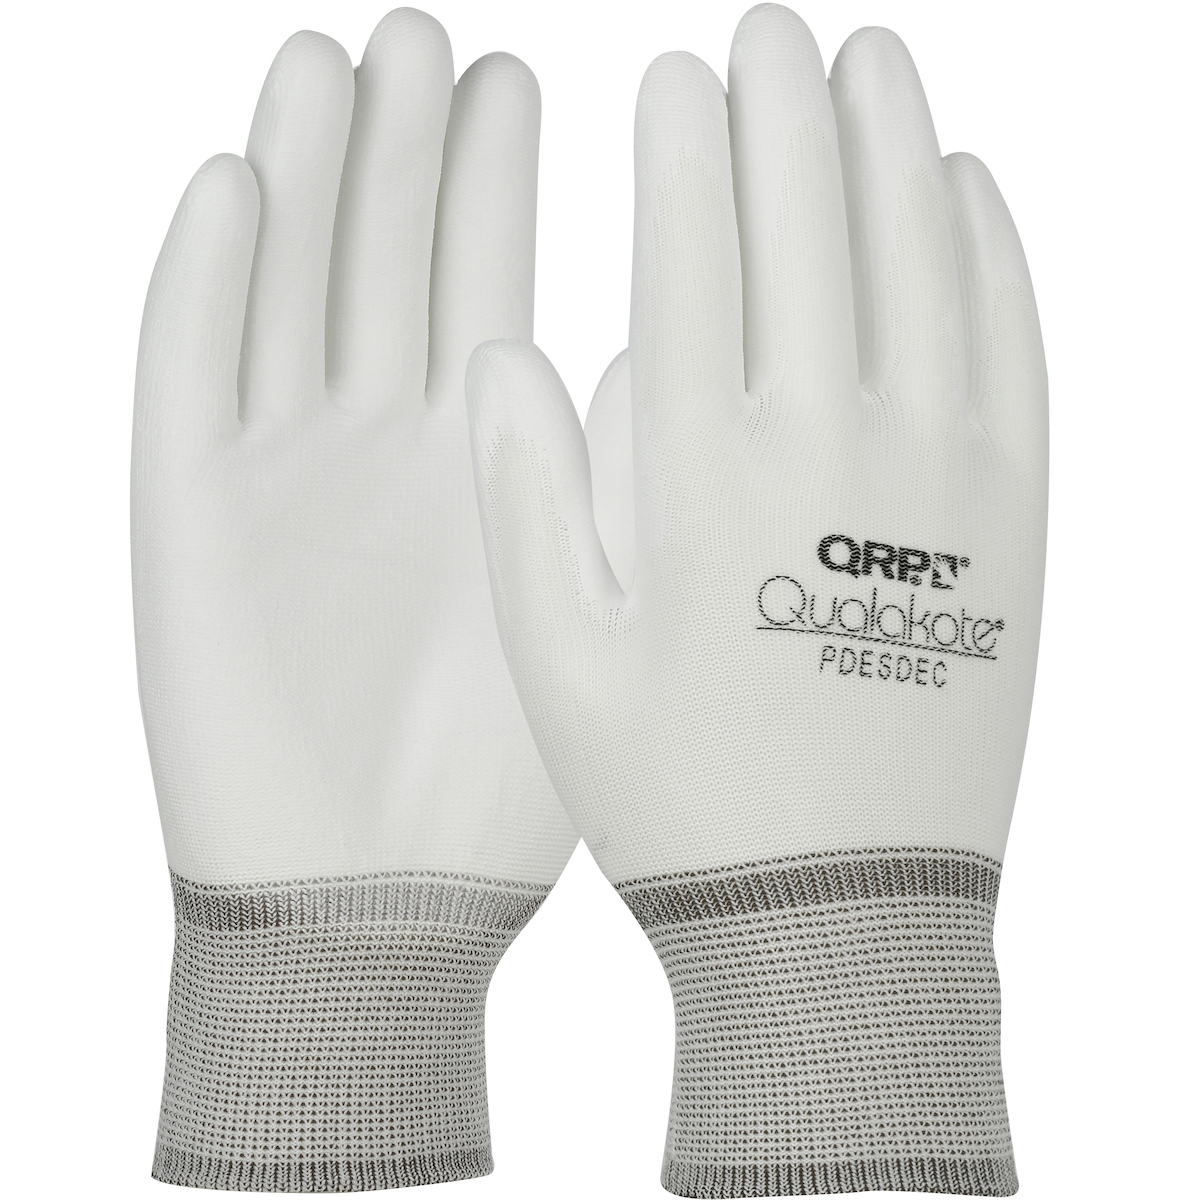 #PDESDEC PIP QRP® Qualakote® Seamless Knit Nylon Gloves with Microfoam Polyurethane Grip